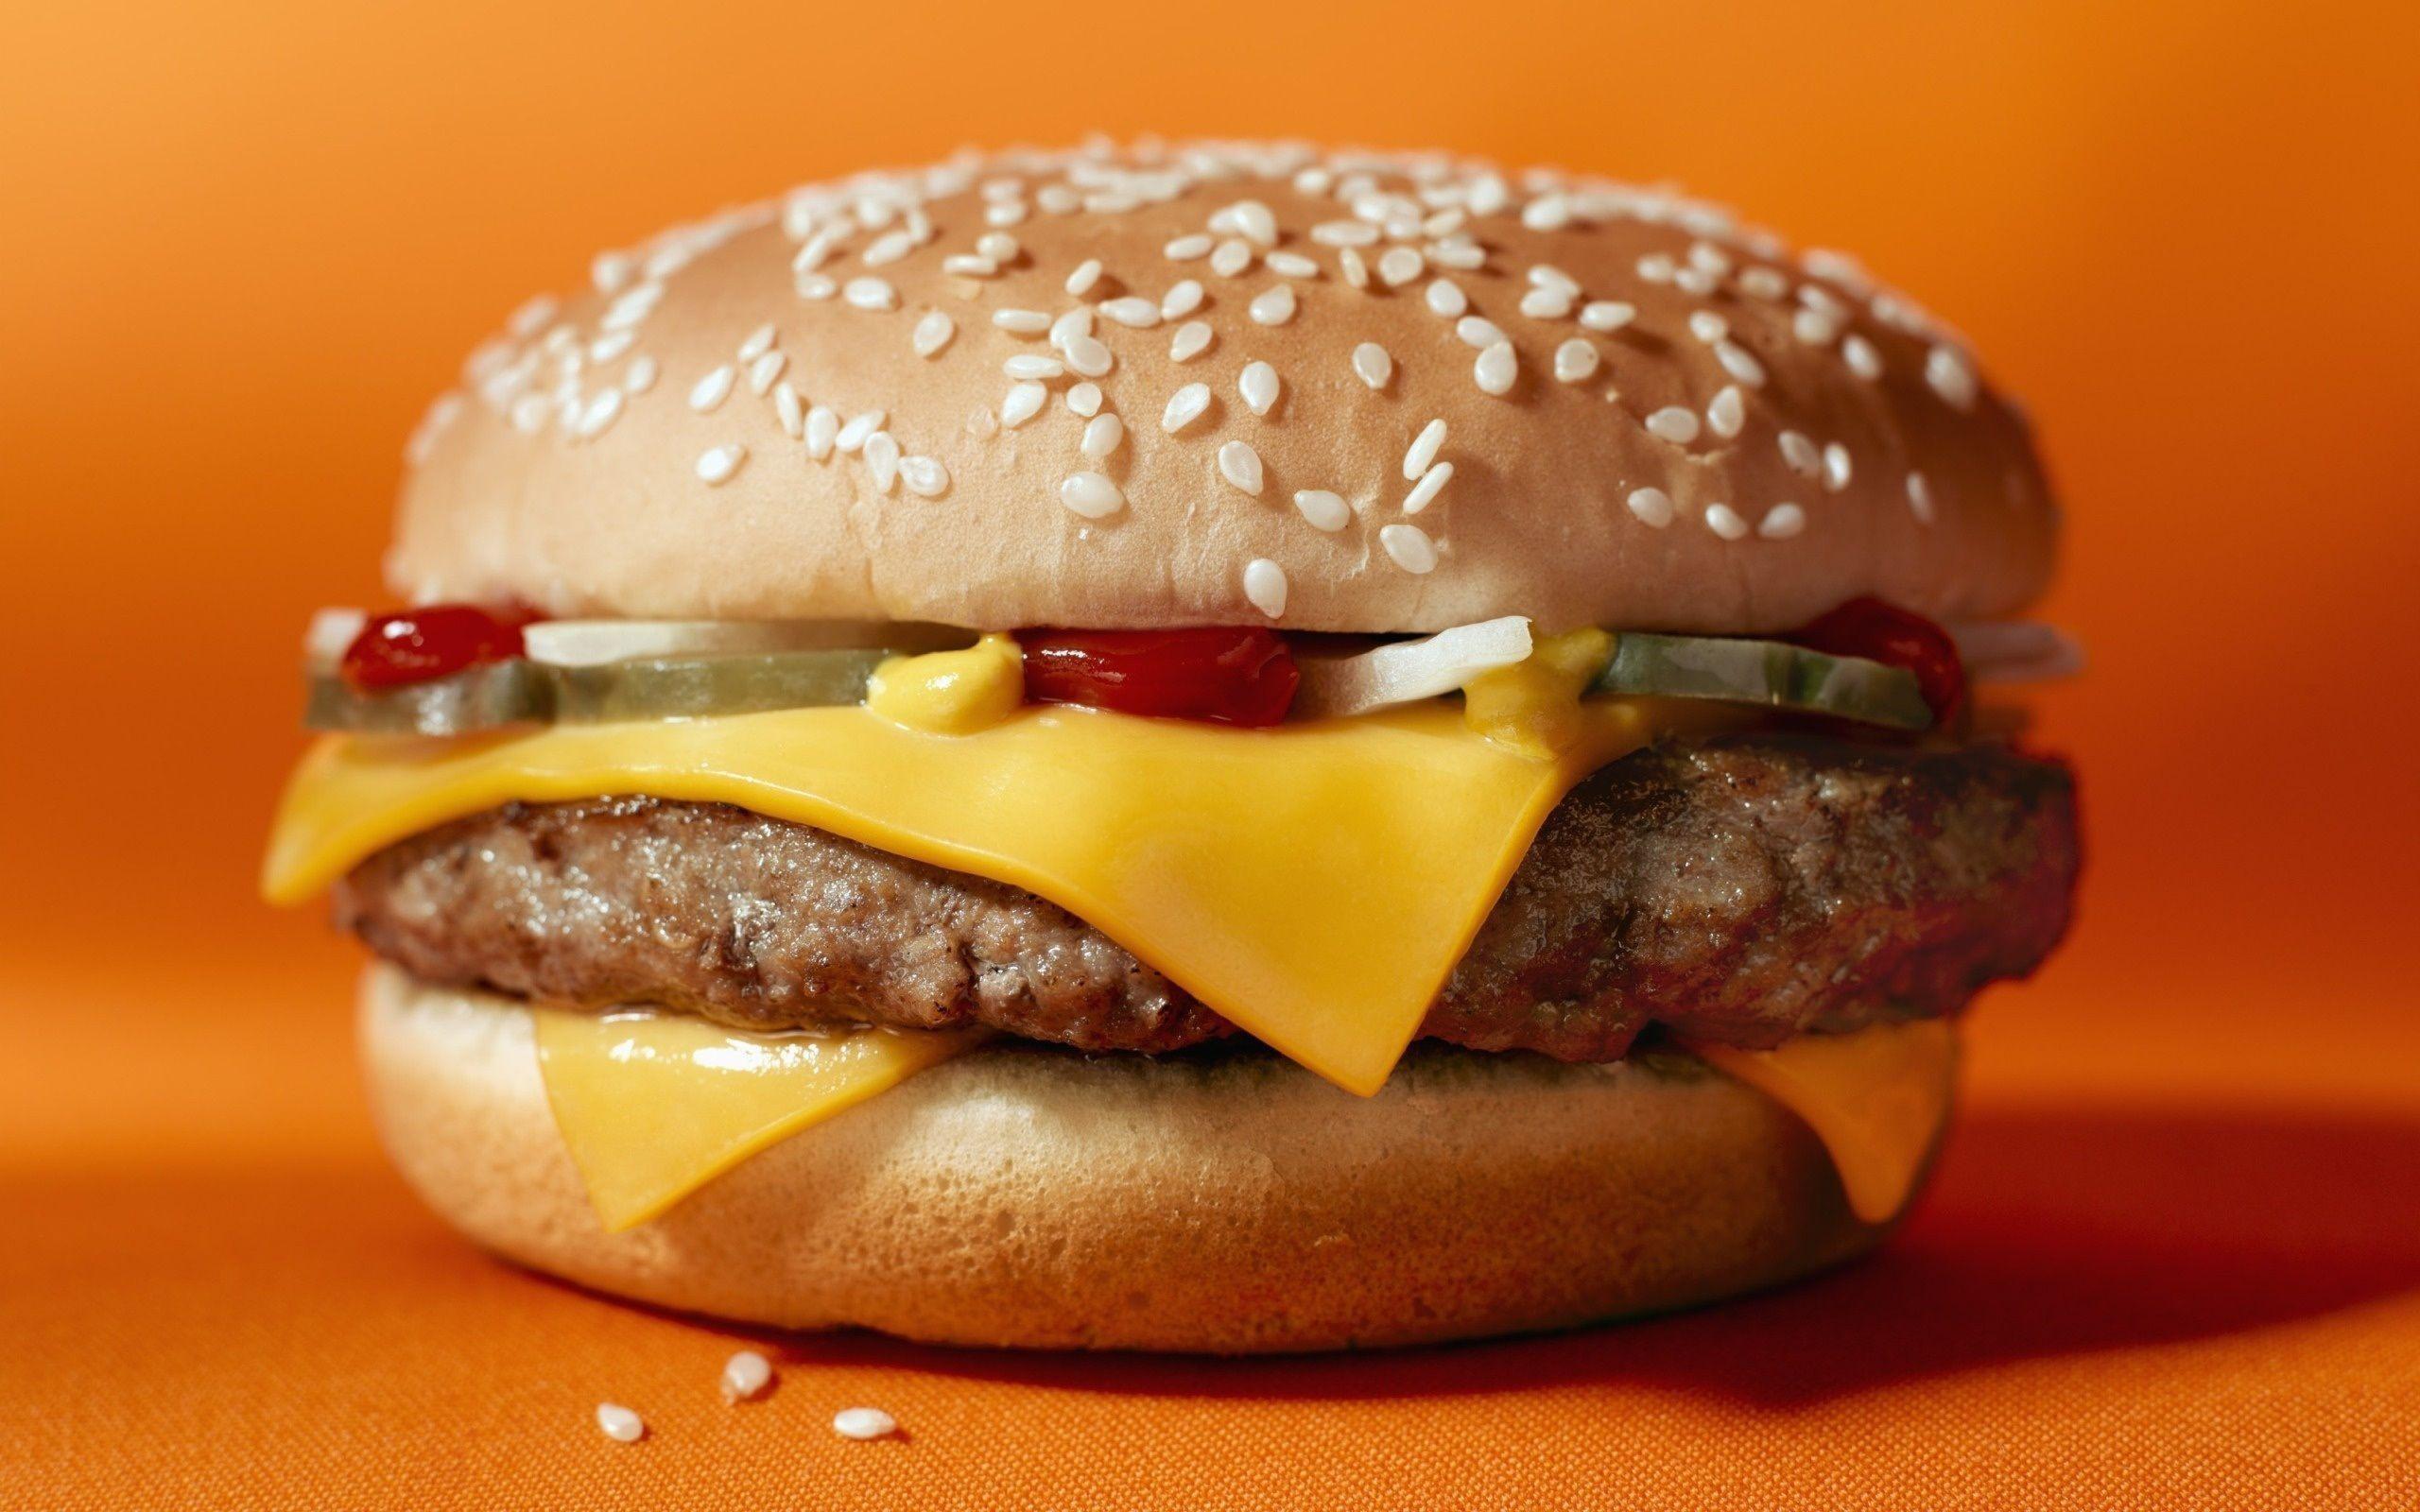 73+] Cheeseburger Wallpaper - WallpaperSafari